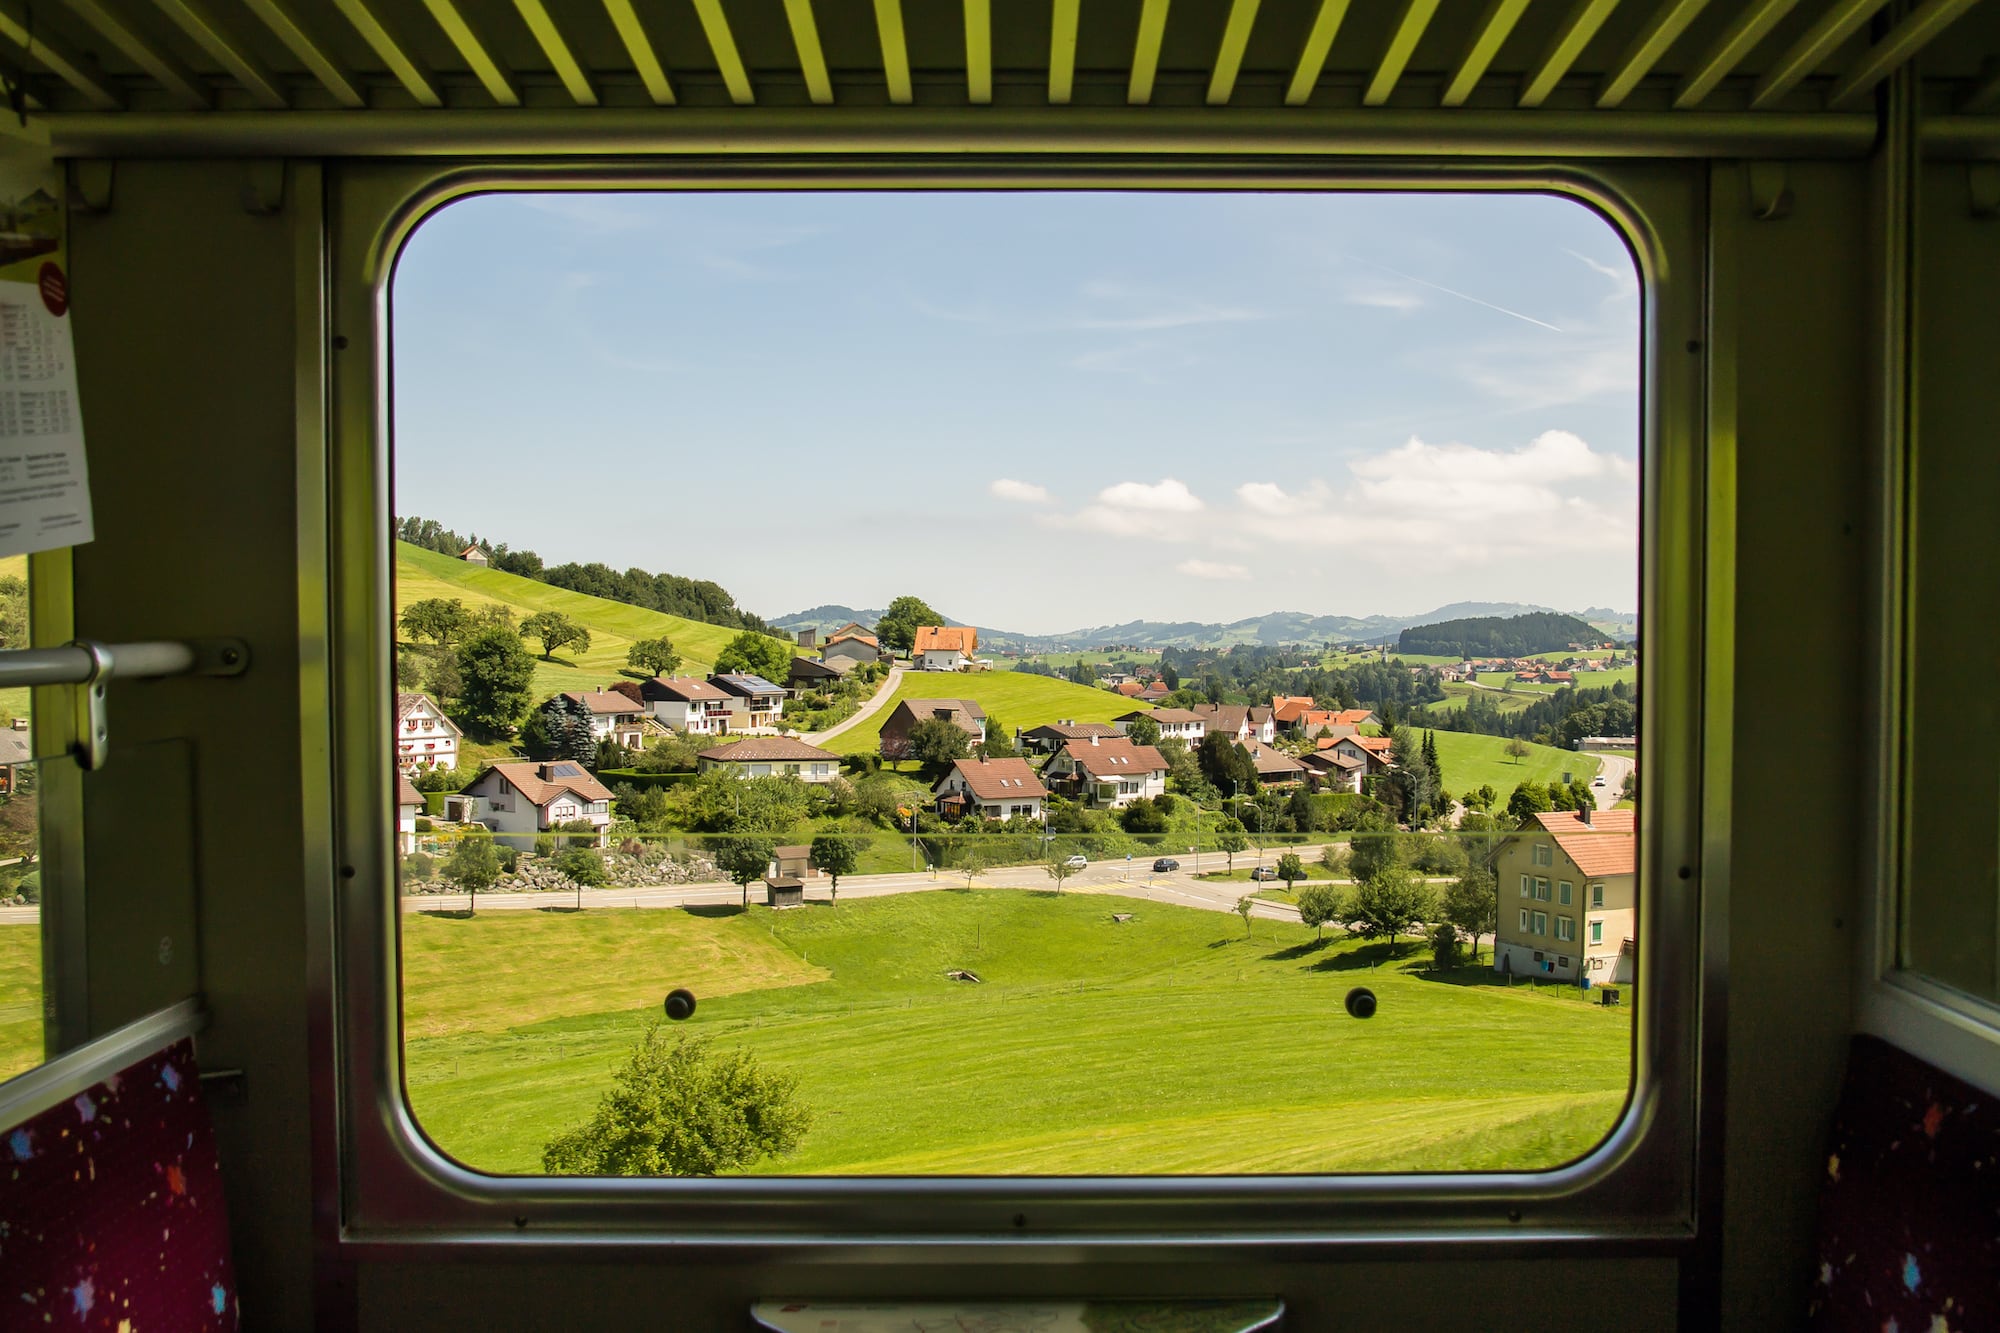 Blick aus dem Fenster im Zug